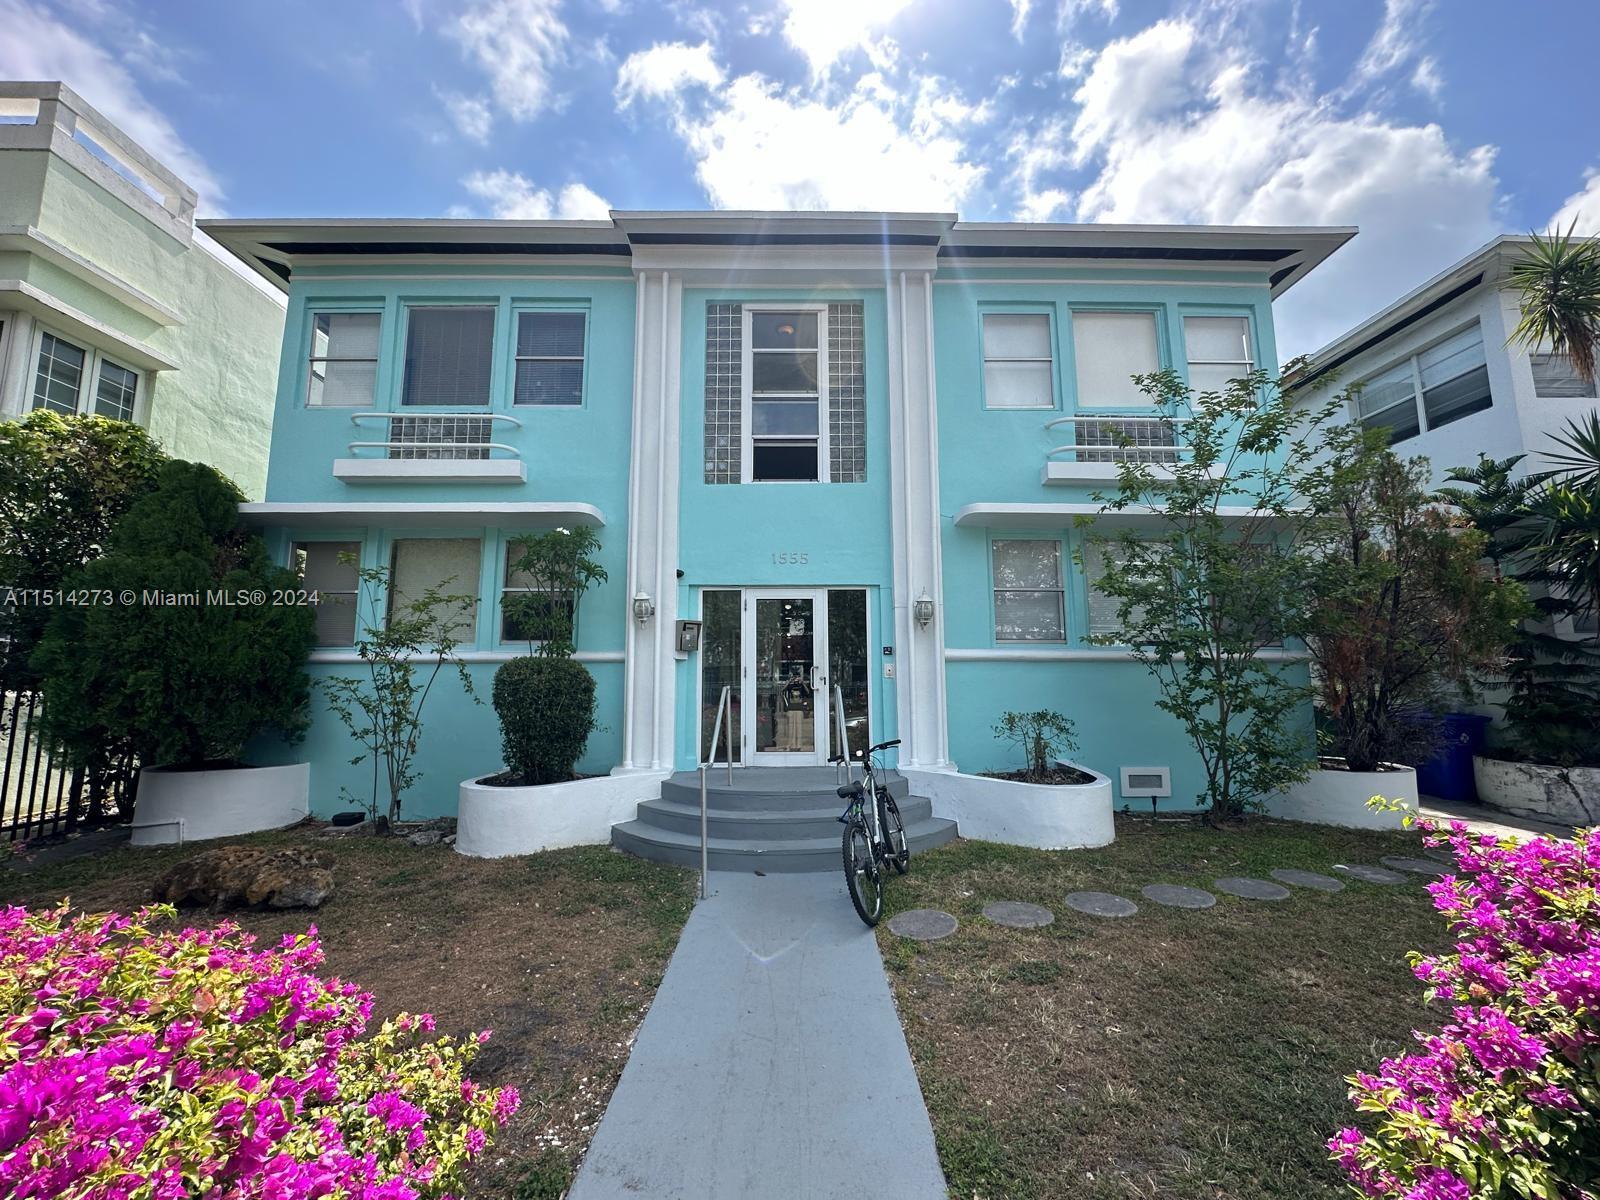 Property for Sale at 1555 Pennsylvania Avenue Ave 105, Miami Beach, Miami-Dade County, Florida - Bedrooms: 1 
Bathrooms: 1  - $200,000